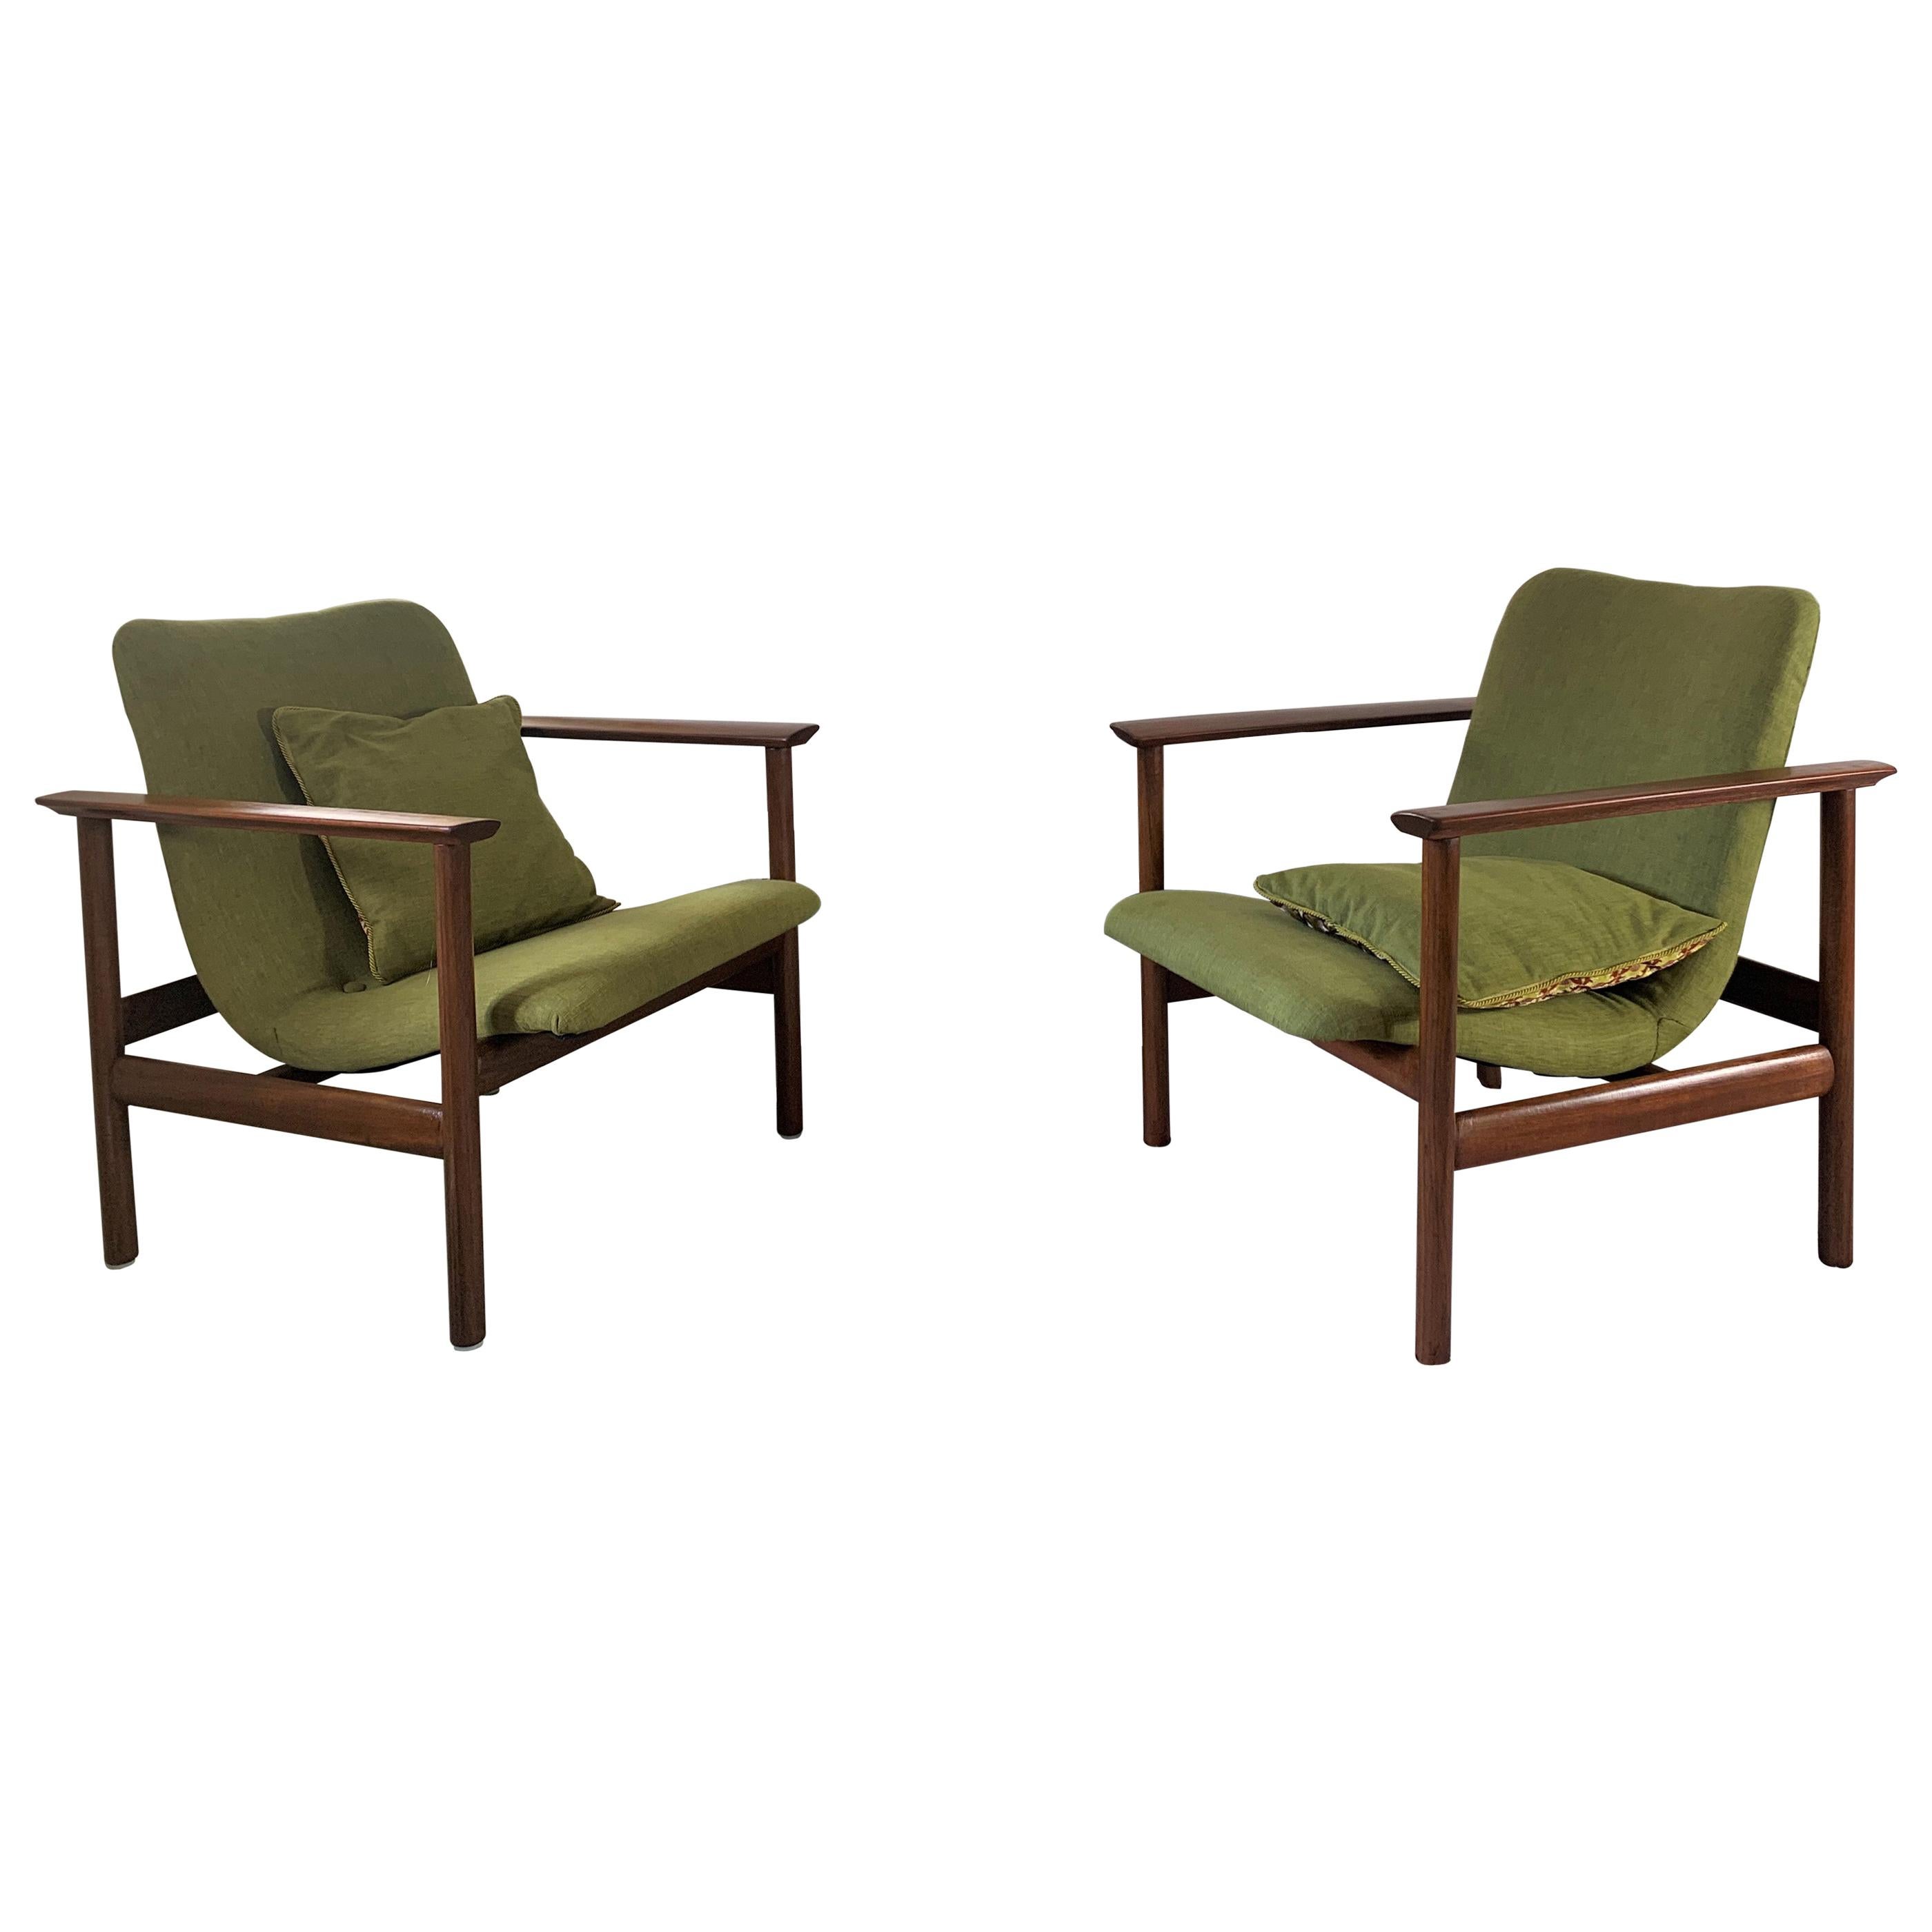 20th Century Scandinavian Modern Green Armchairs Reupholstered, Set of 2